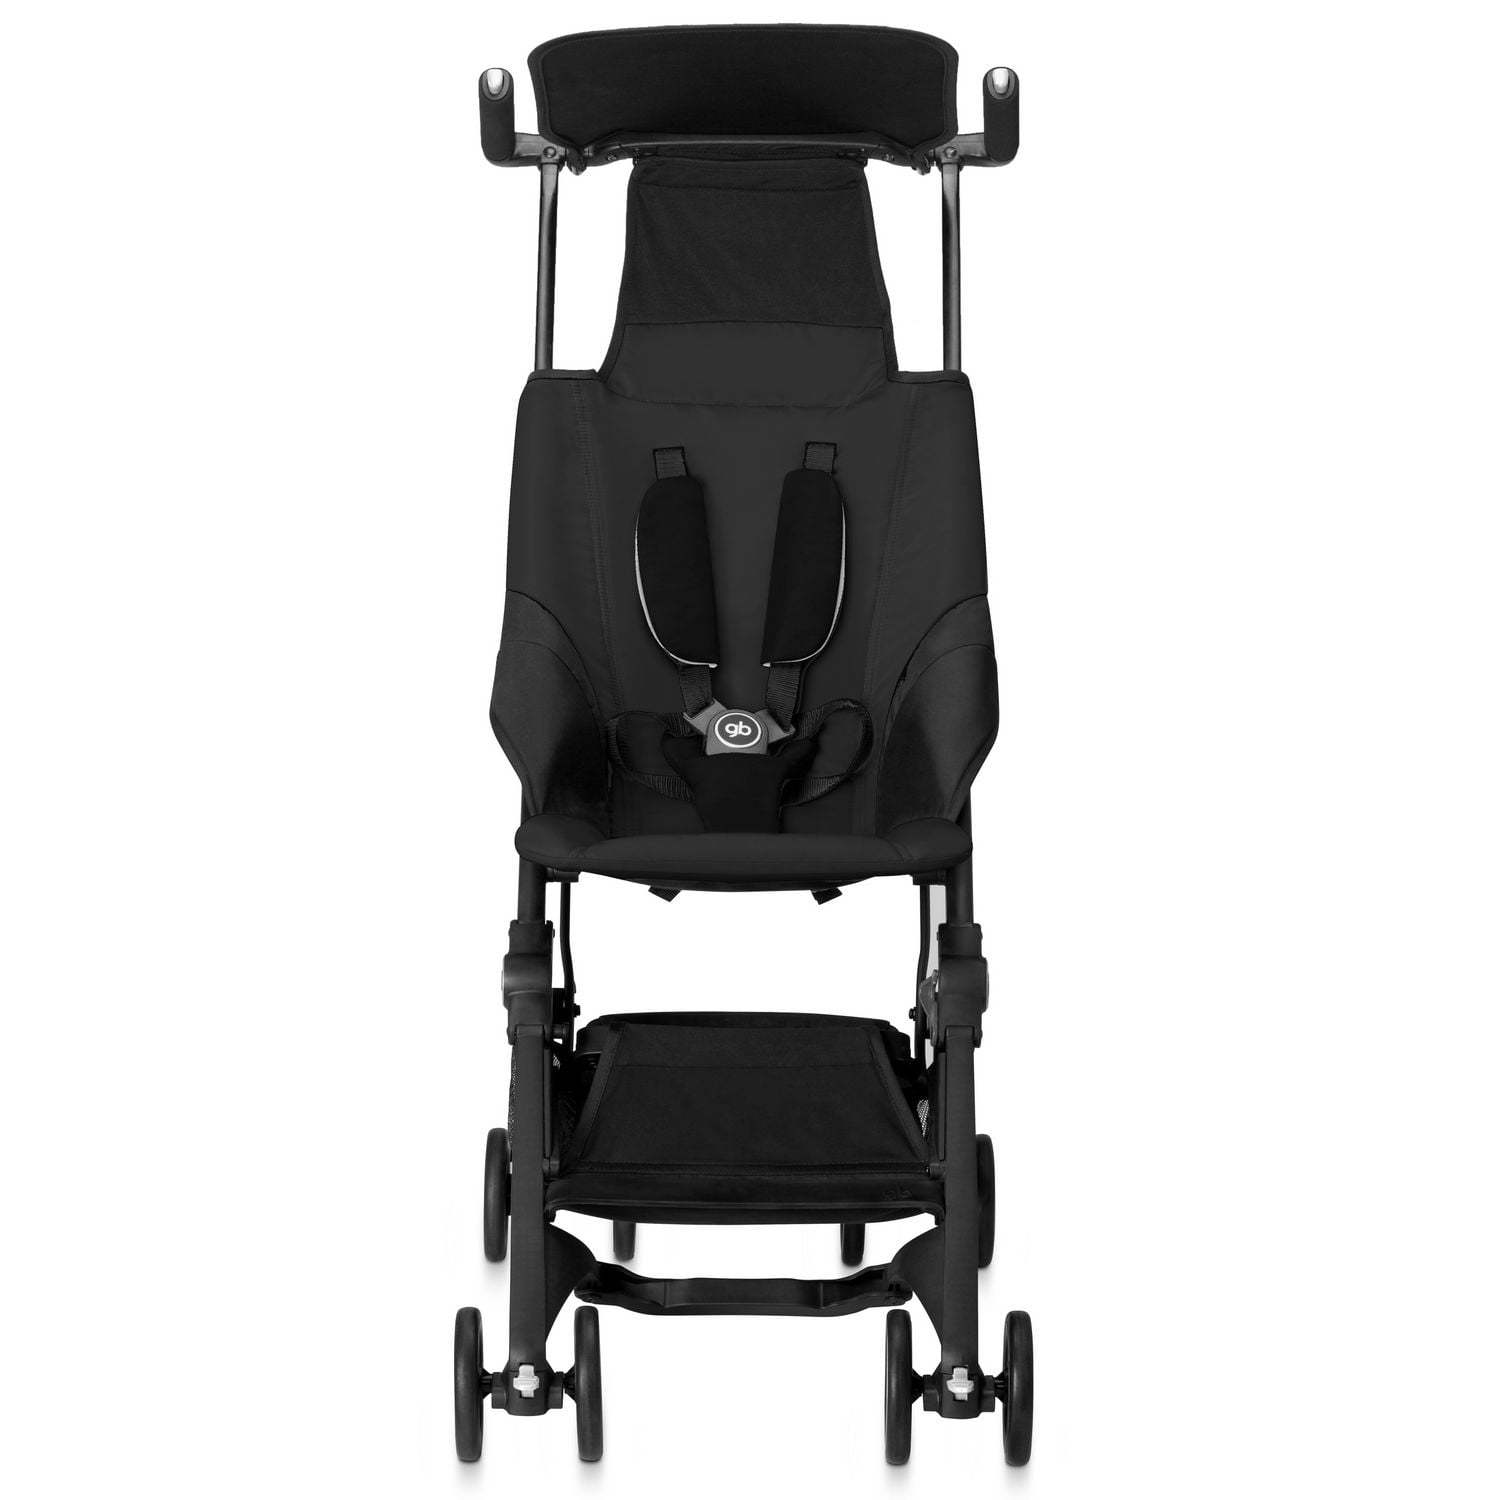 ALWAYSME Pocket Stroller Seat Liner For gb Pockit ,Pockit + Plus